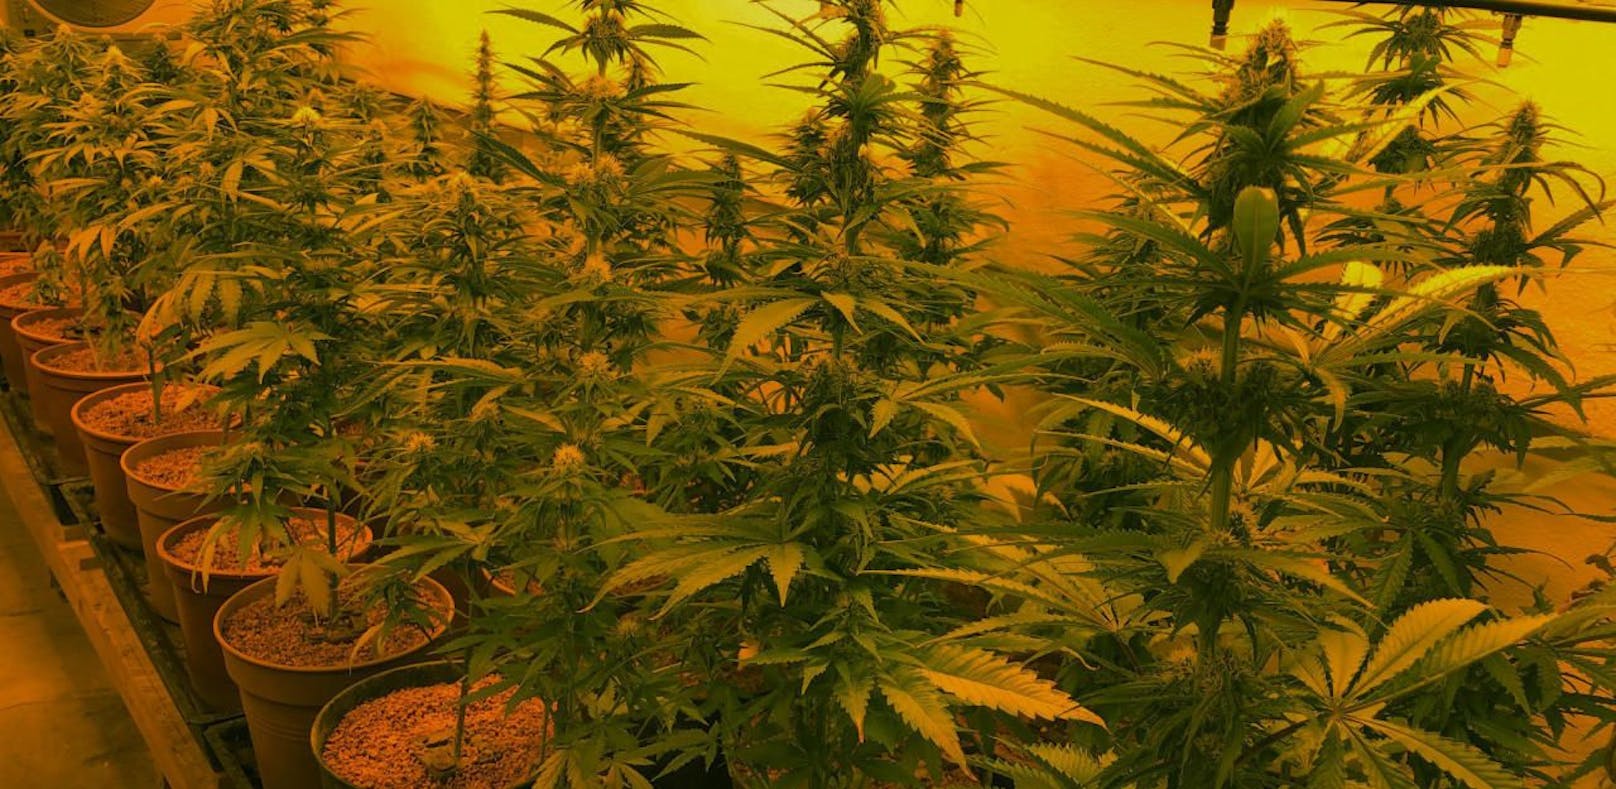 Beamte stellten eine Aufzuchtsanlage von Cannabispflanzen sicher. 